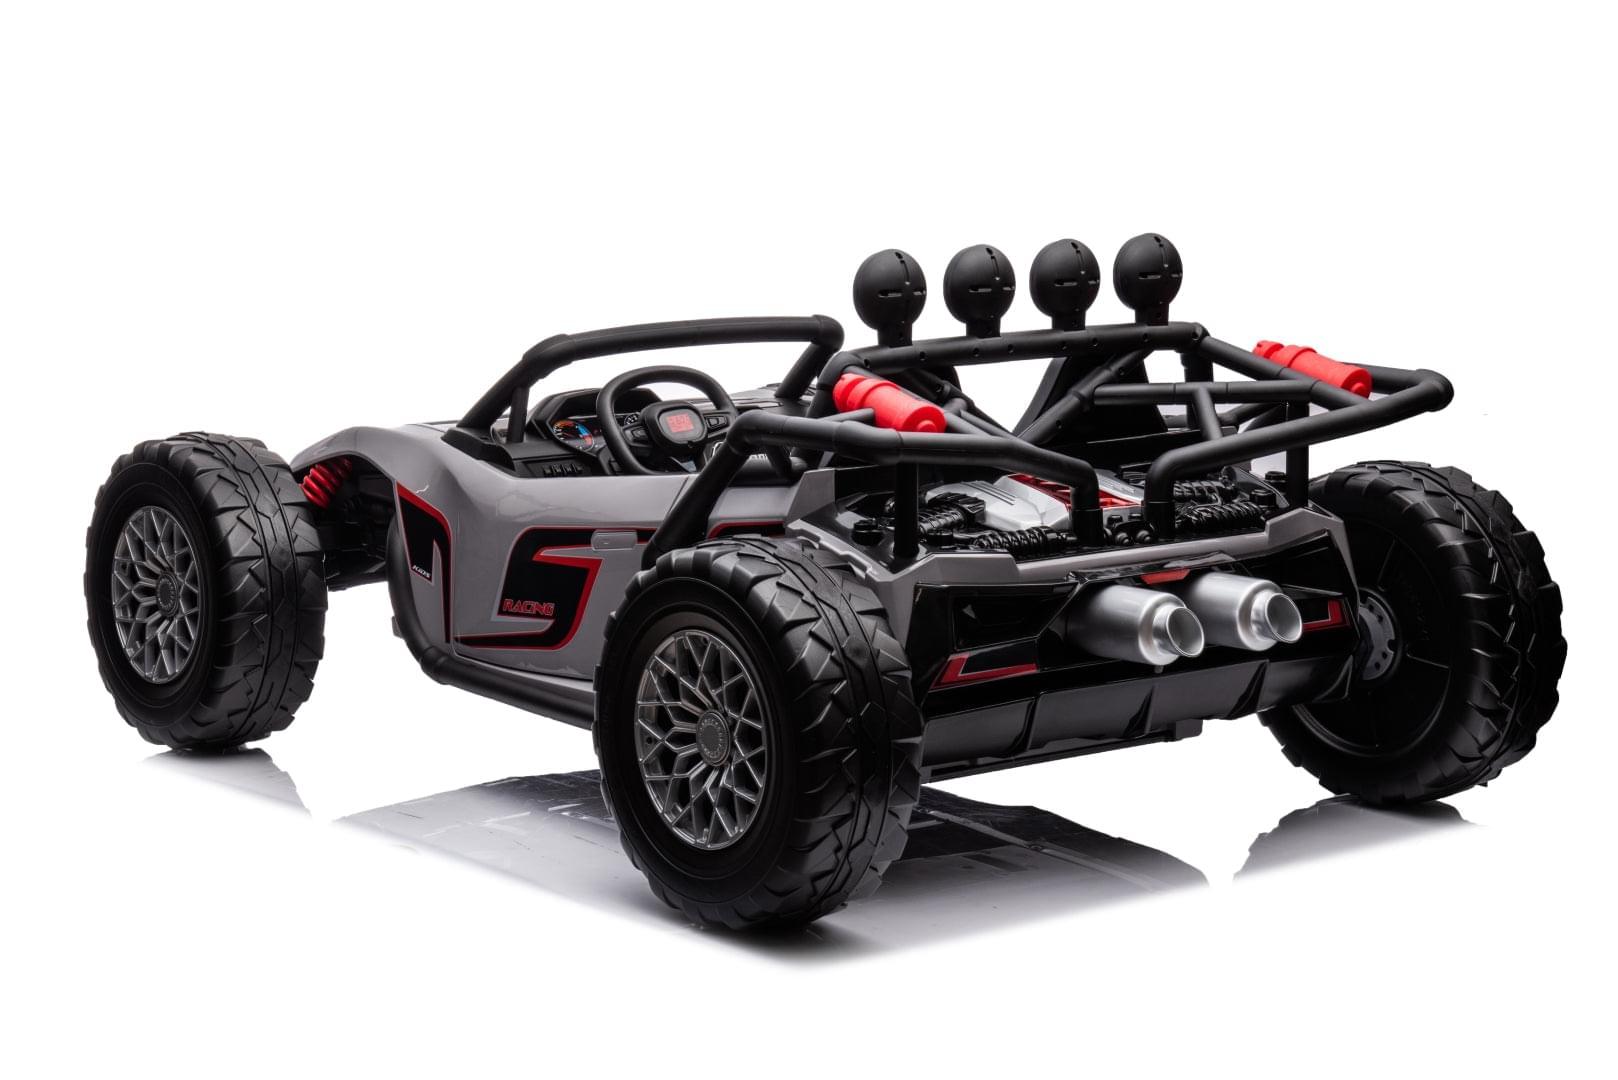 24V Freddo Monster 2 Seater Ride on for Kids - DTI Direct USA